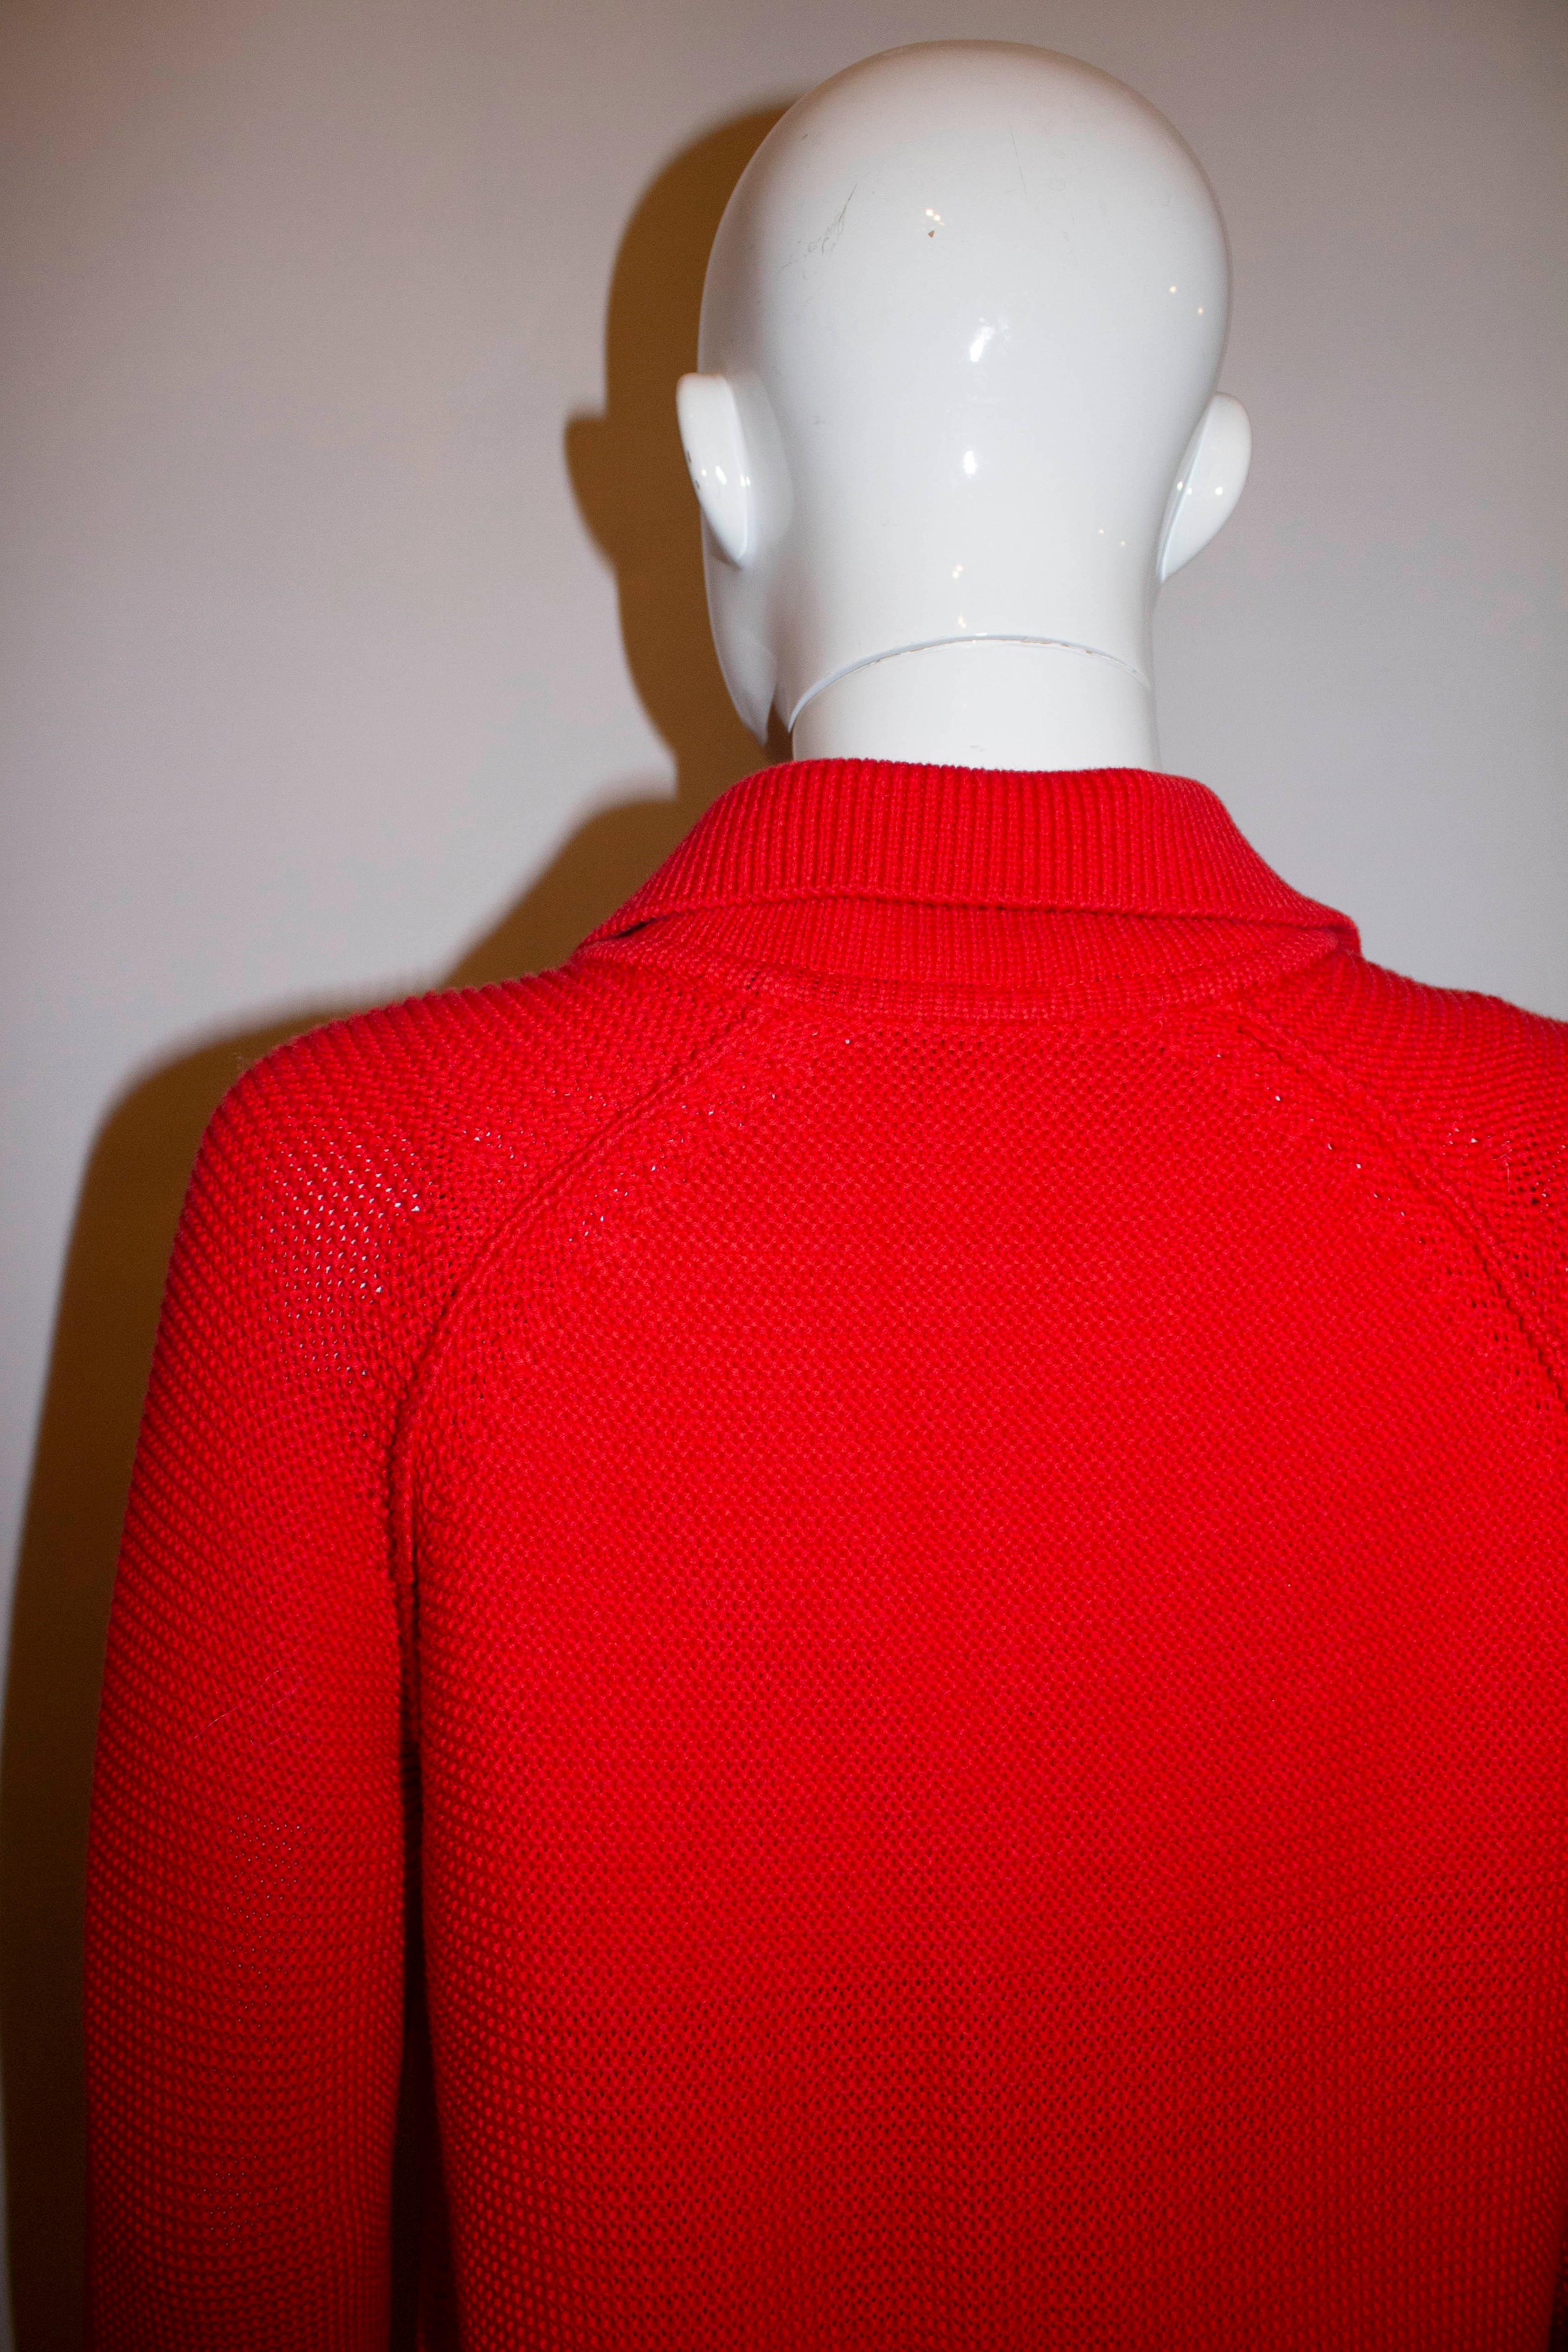 Une couverture chic et colorée pour le printemps/été. Par Sonia pour Sonia Rykiel, le cardigan est en coton rouge avec une bordure en soie rouge. Il a des poignets retournés, des poches sur les hanches et une ouverture frontale boutonnée.
Mesures :